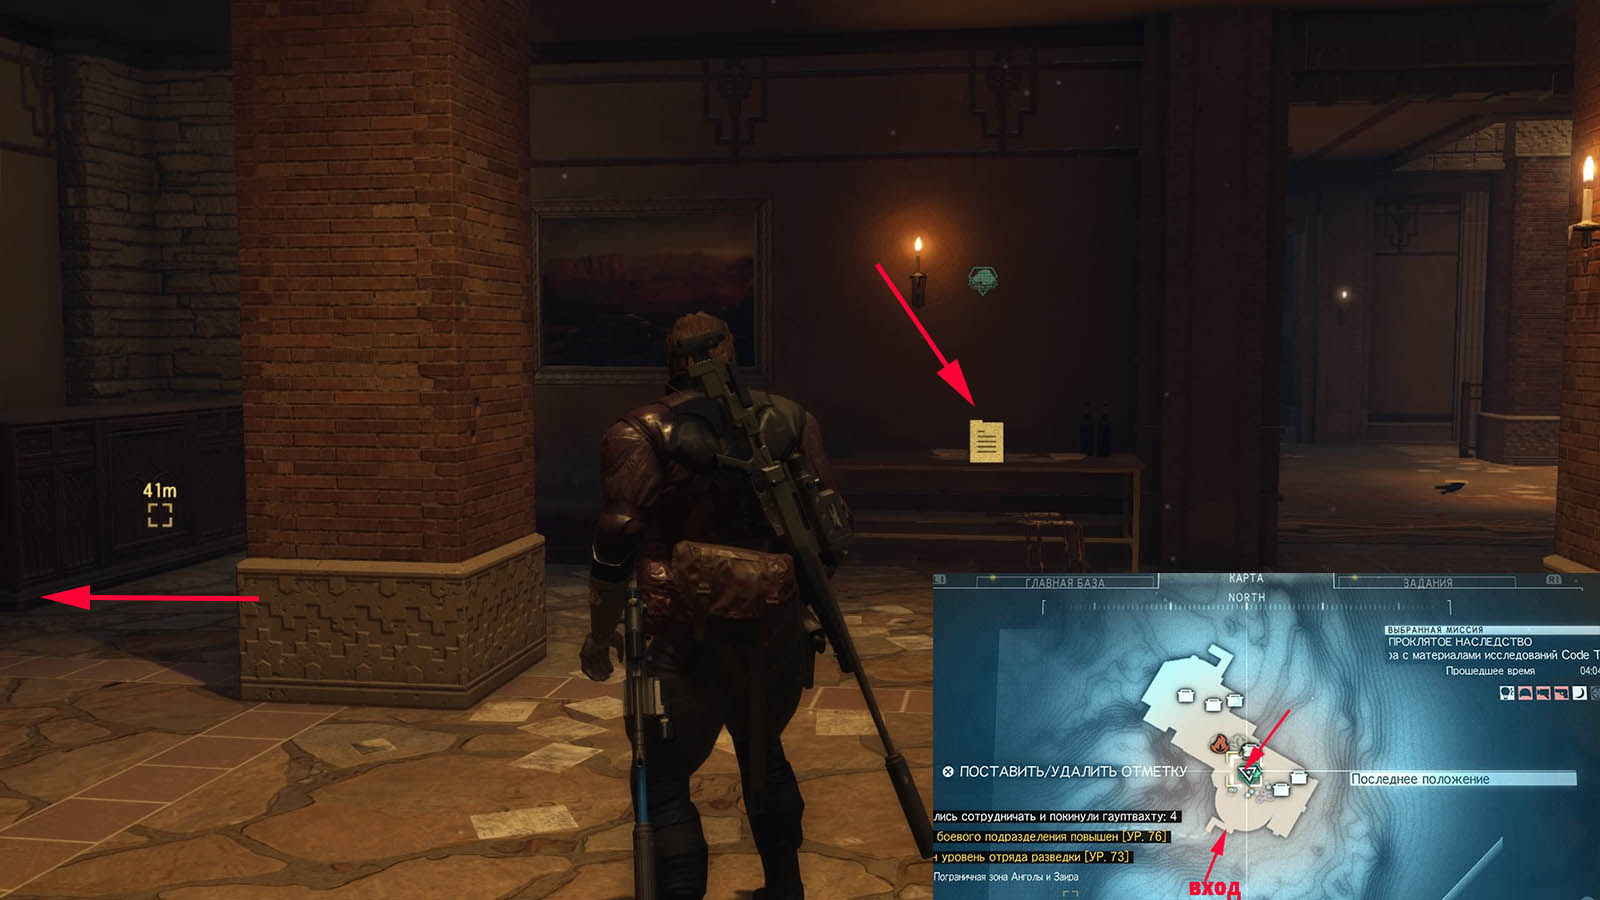 Metal Gear Solid V: The Phantom Pain По разведданным установлено местонахождение солдата